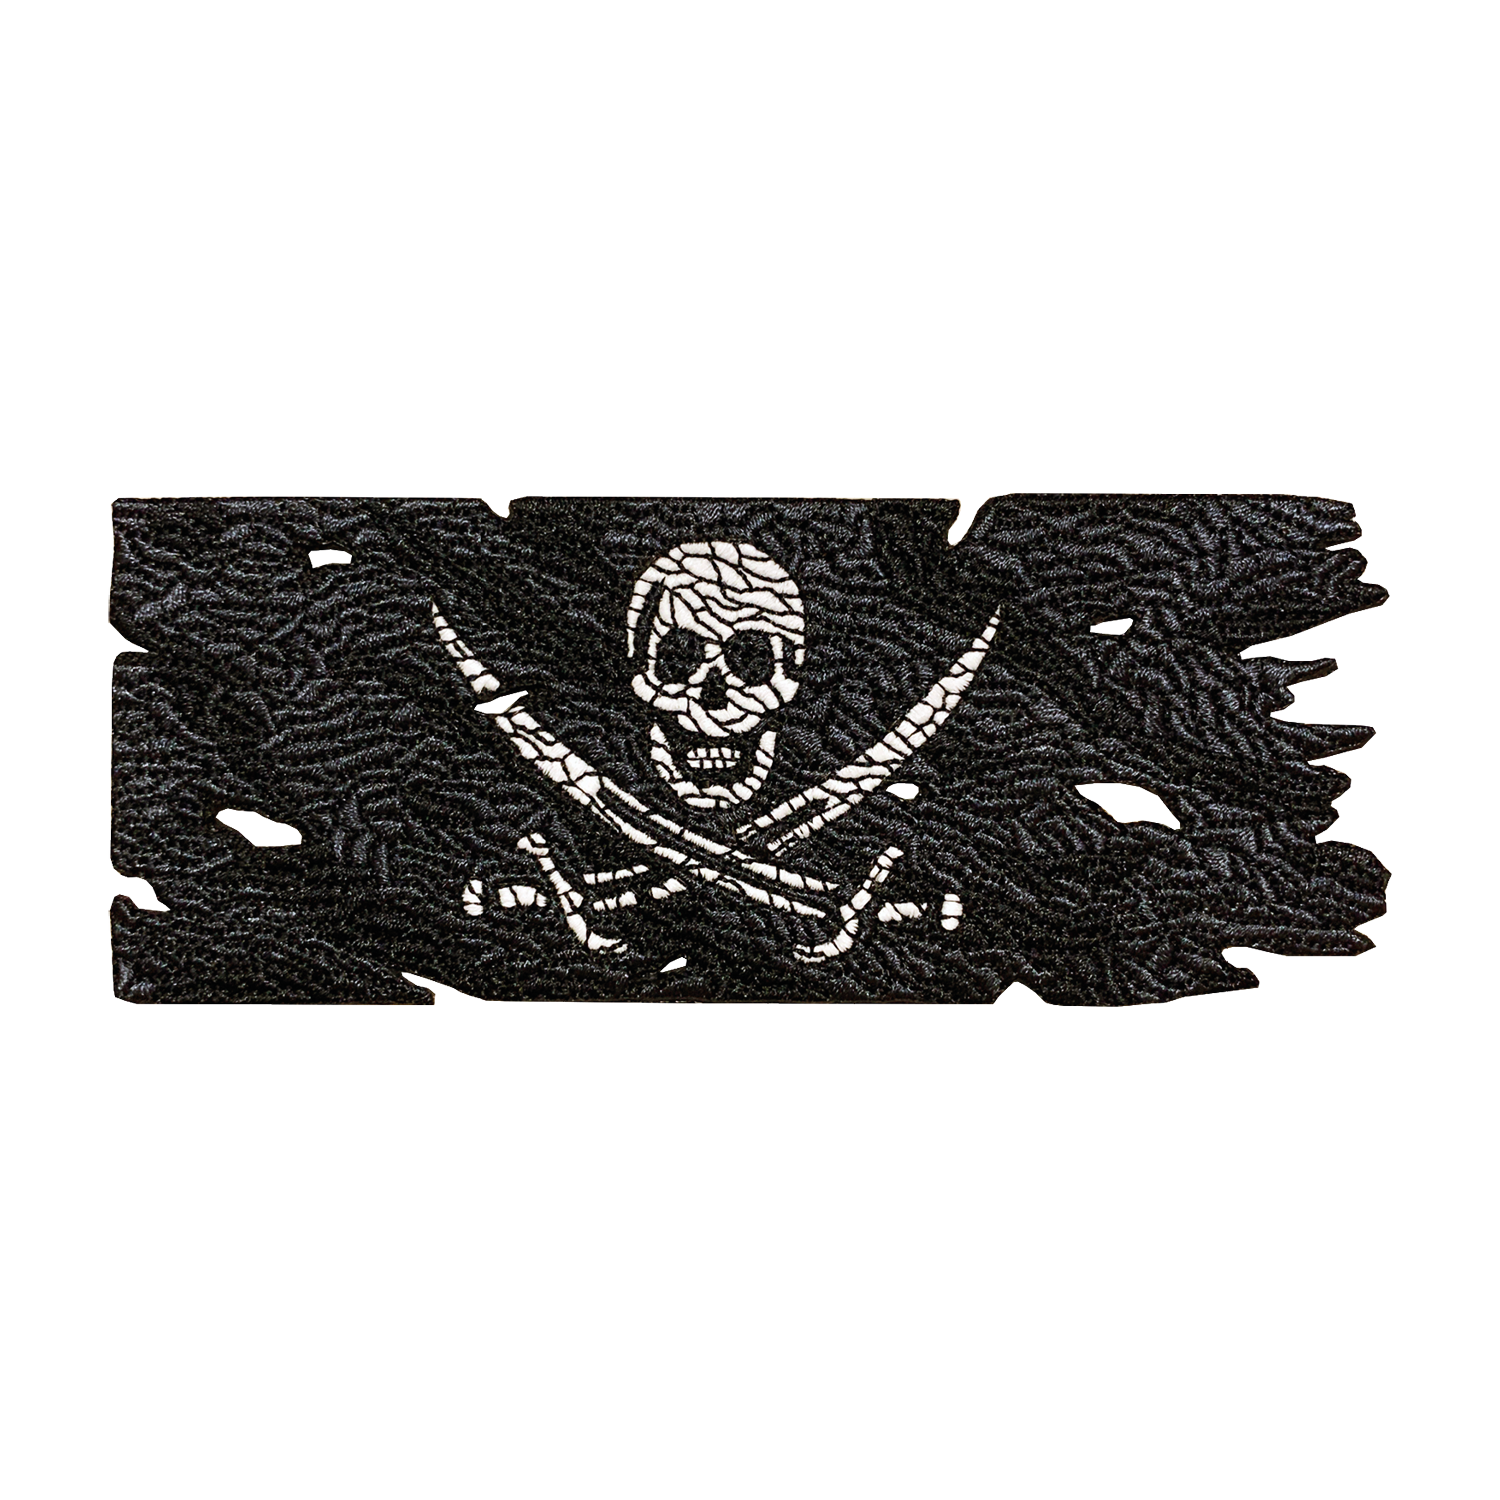 Calico Jack Pirate Flag [v1] Patch - GZila Designs